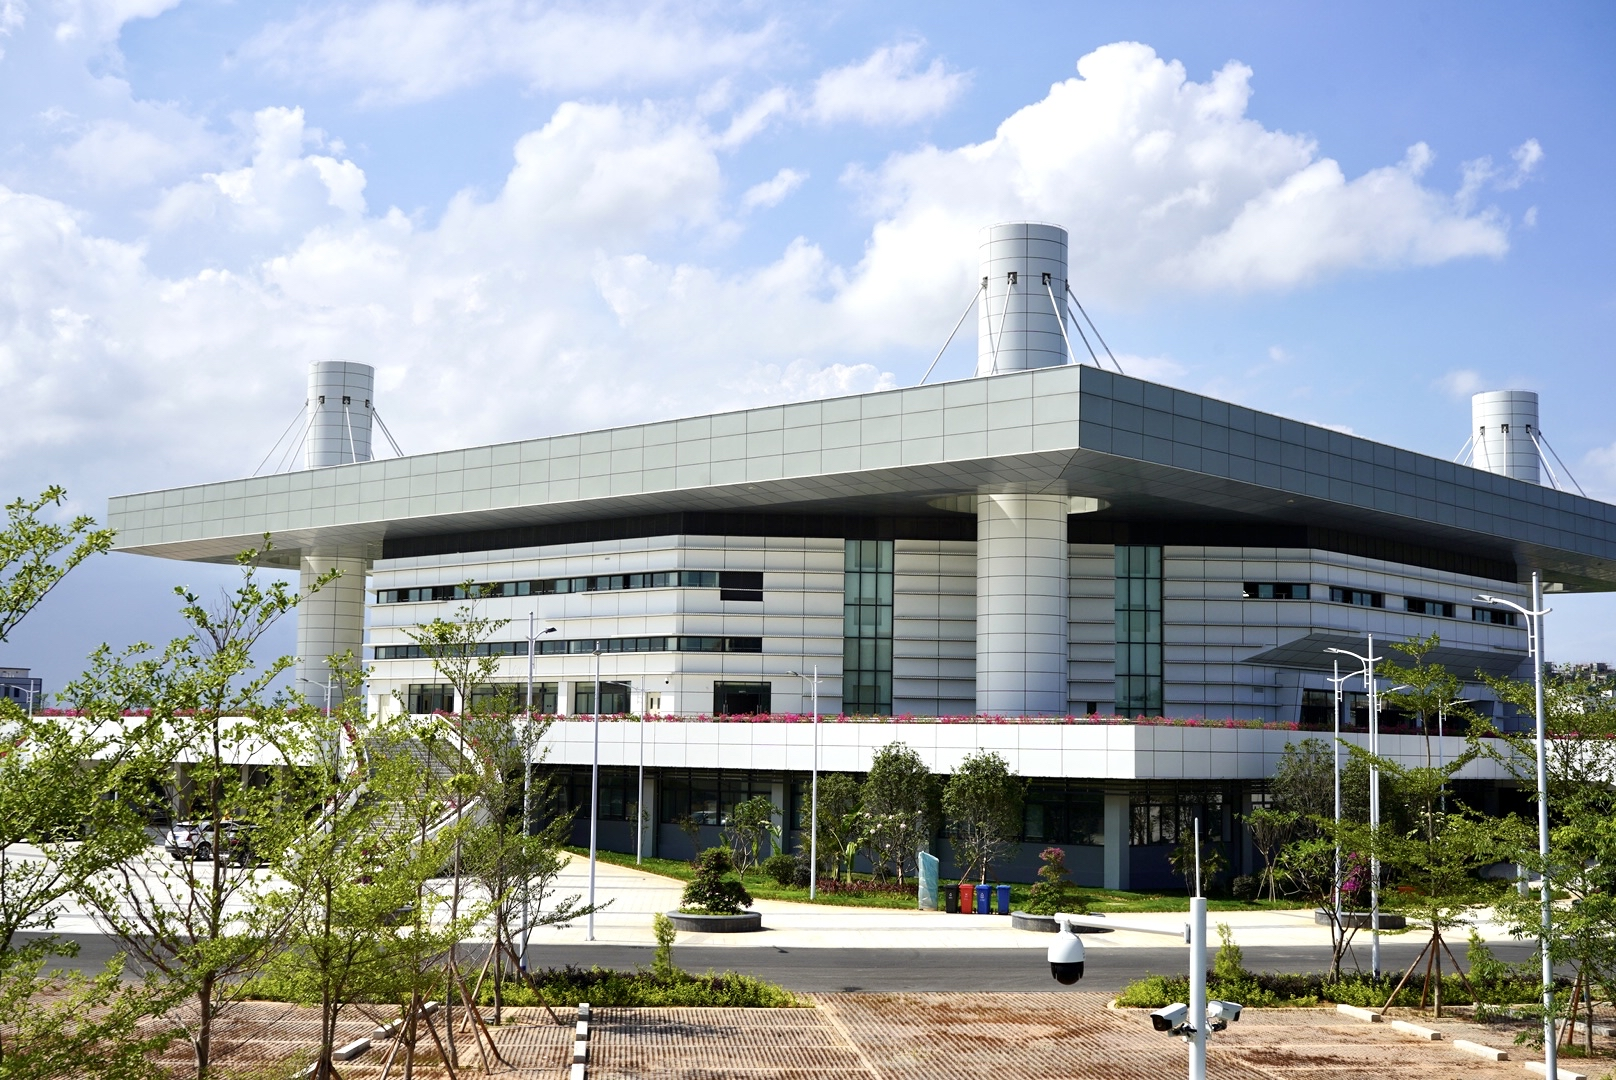 汕头正大体育馆是首个竣工验收的亚青会场馆。杨立轩